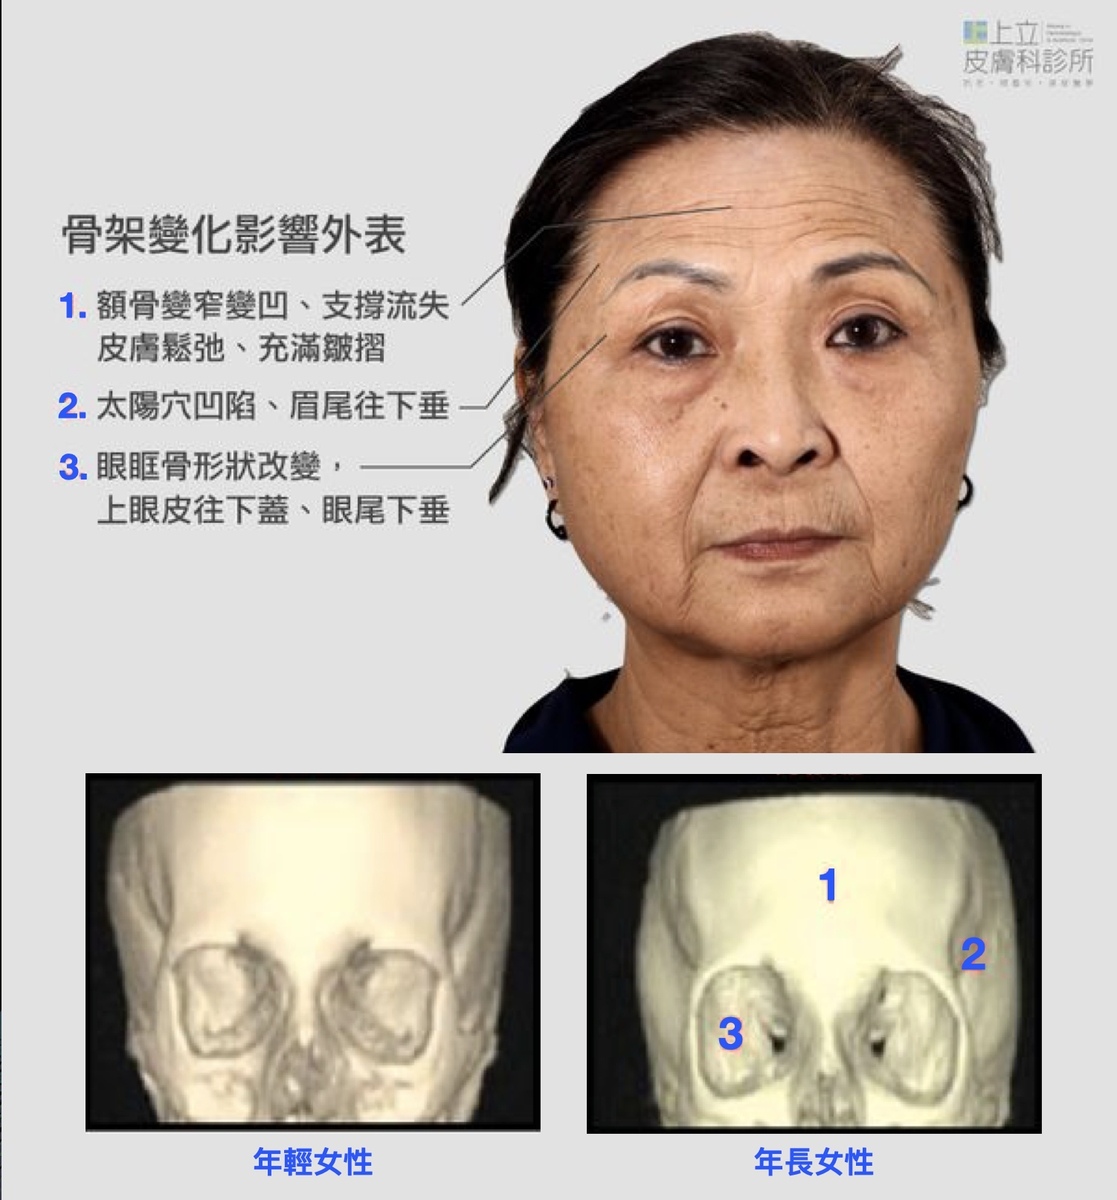 臉部骨架會因為老化流失出現形狀上的改變，夫妻宮不夠立體